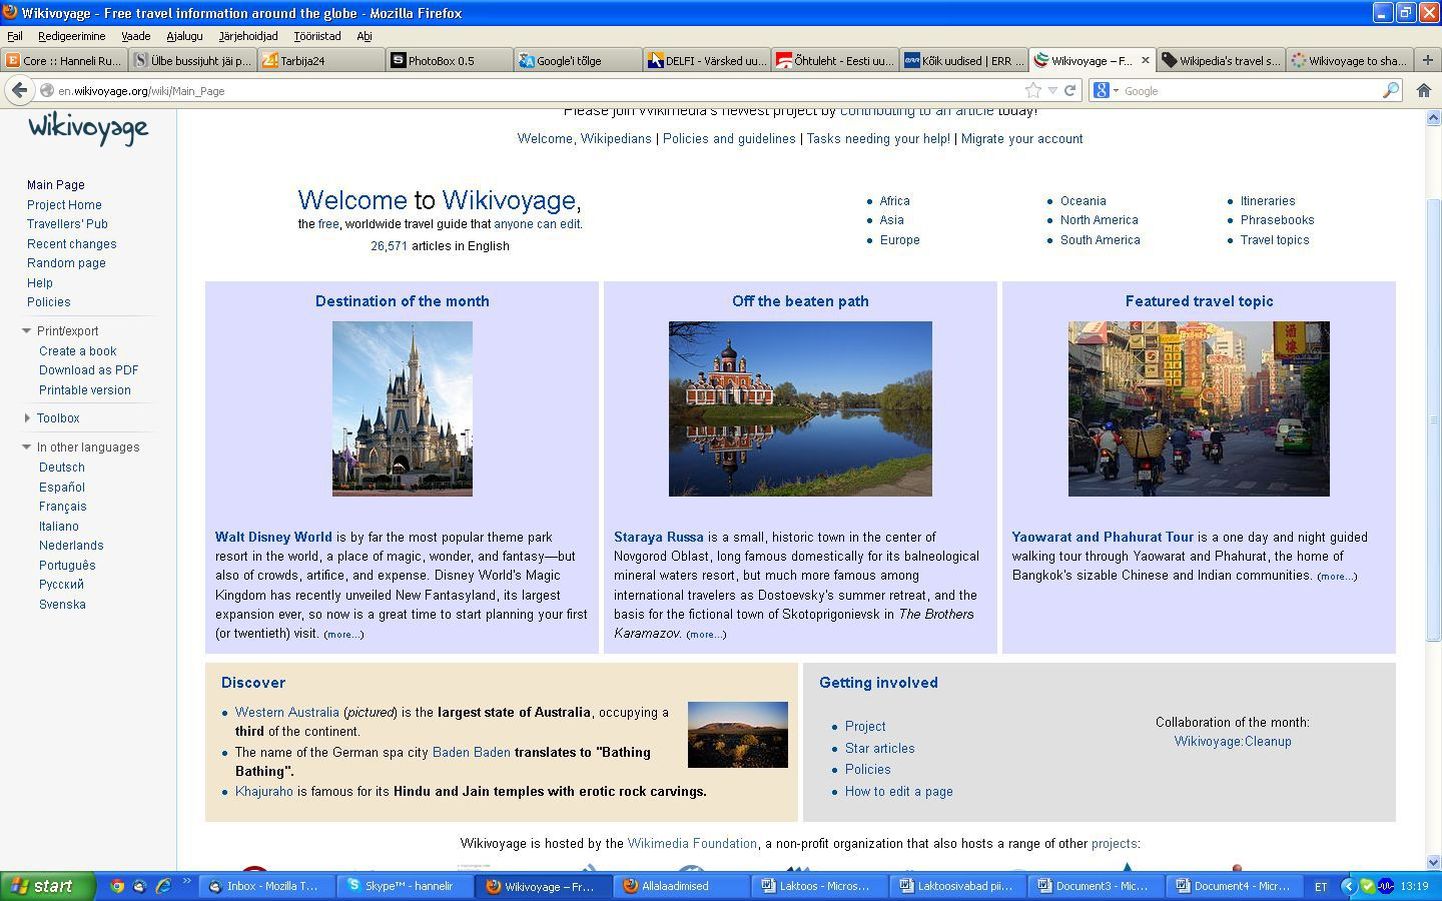 Uus reisileht Wikivoyage.